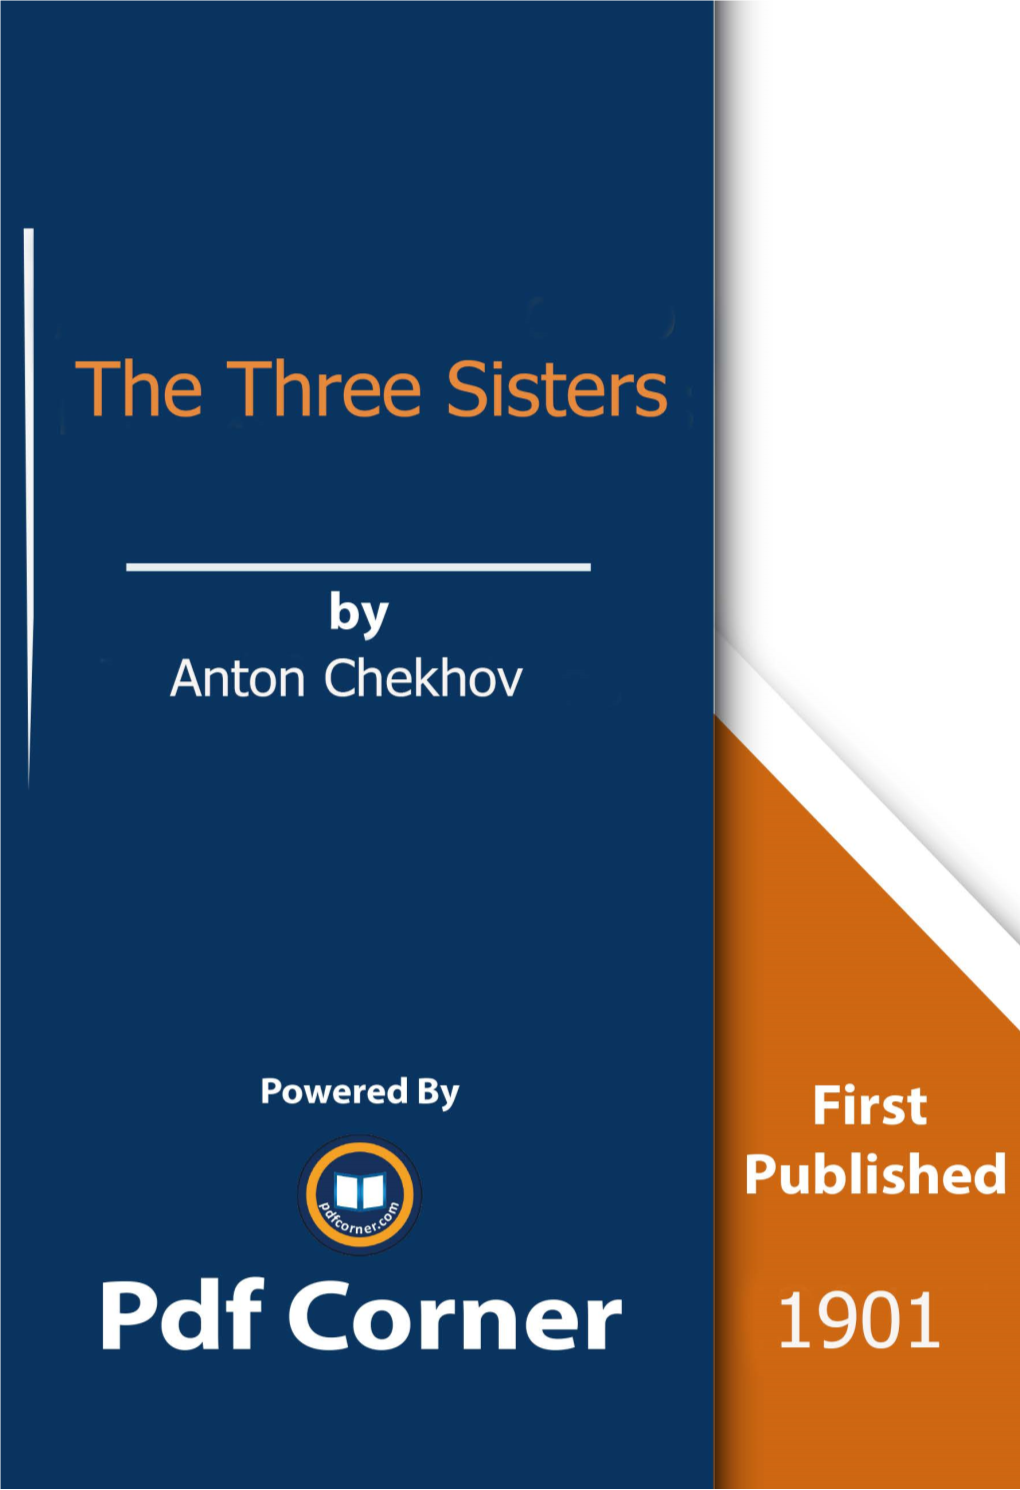 The Three Sisters Pdf by Anton Chekhov